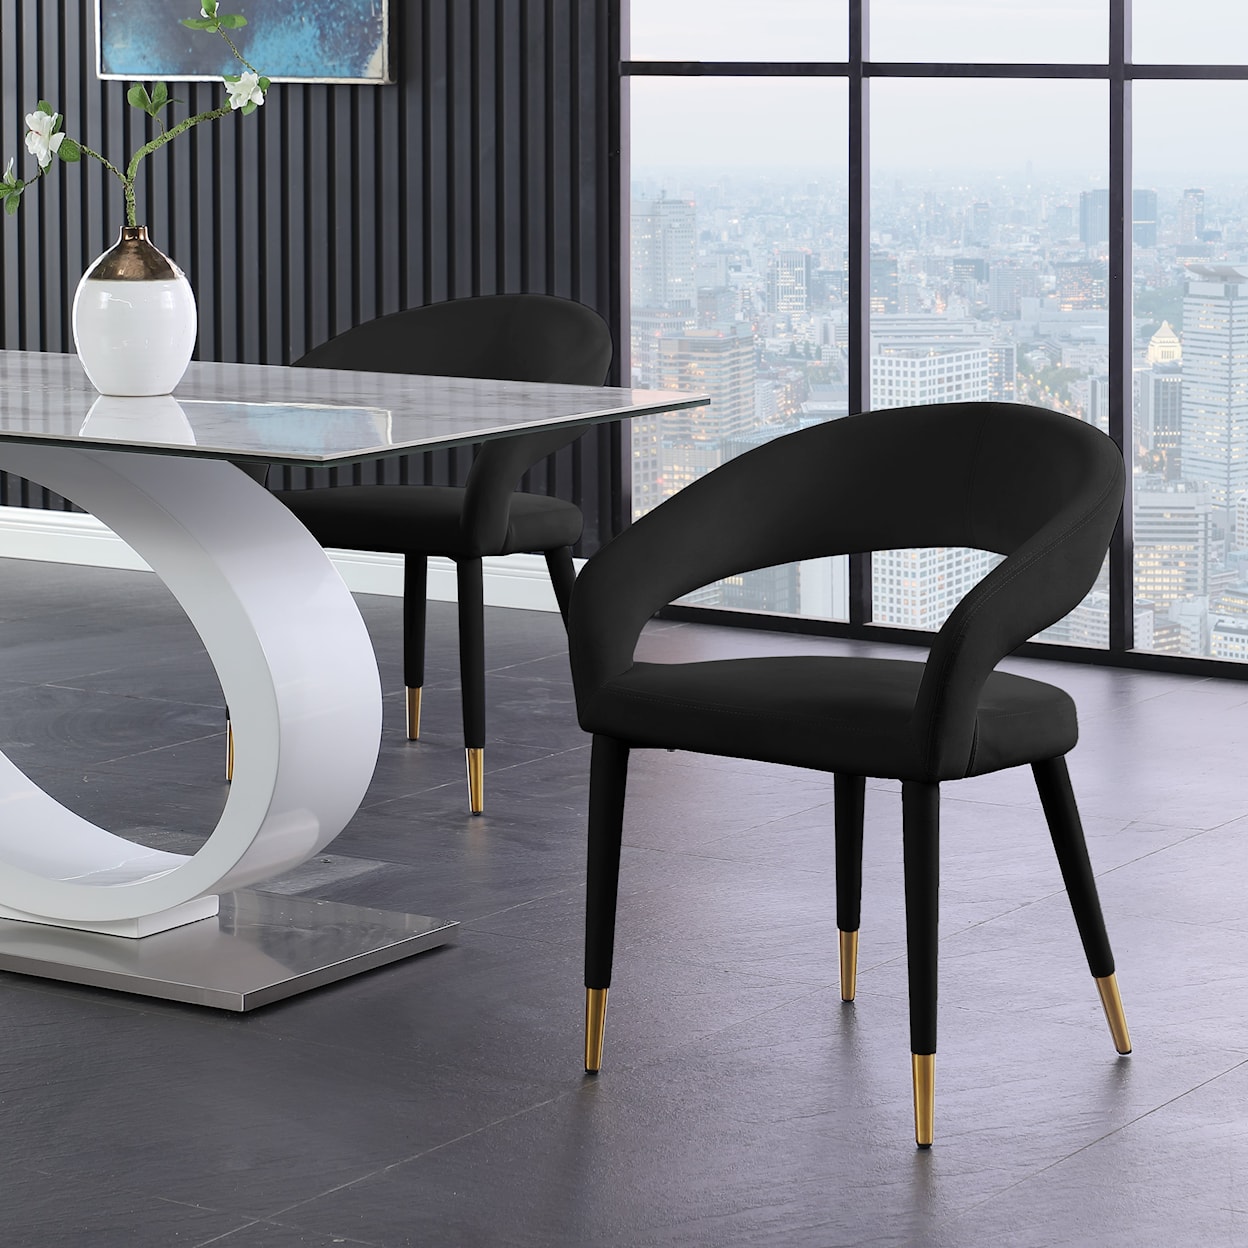 Meridian Furniture Destiny Upholstered Black Velvet Dining Chair